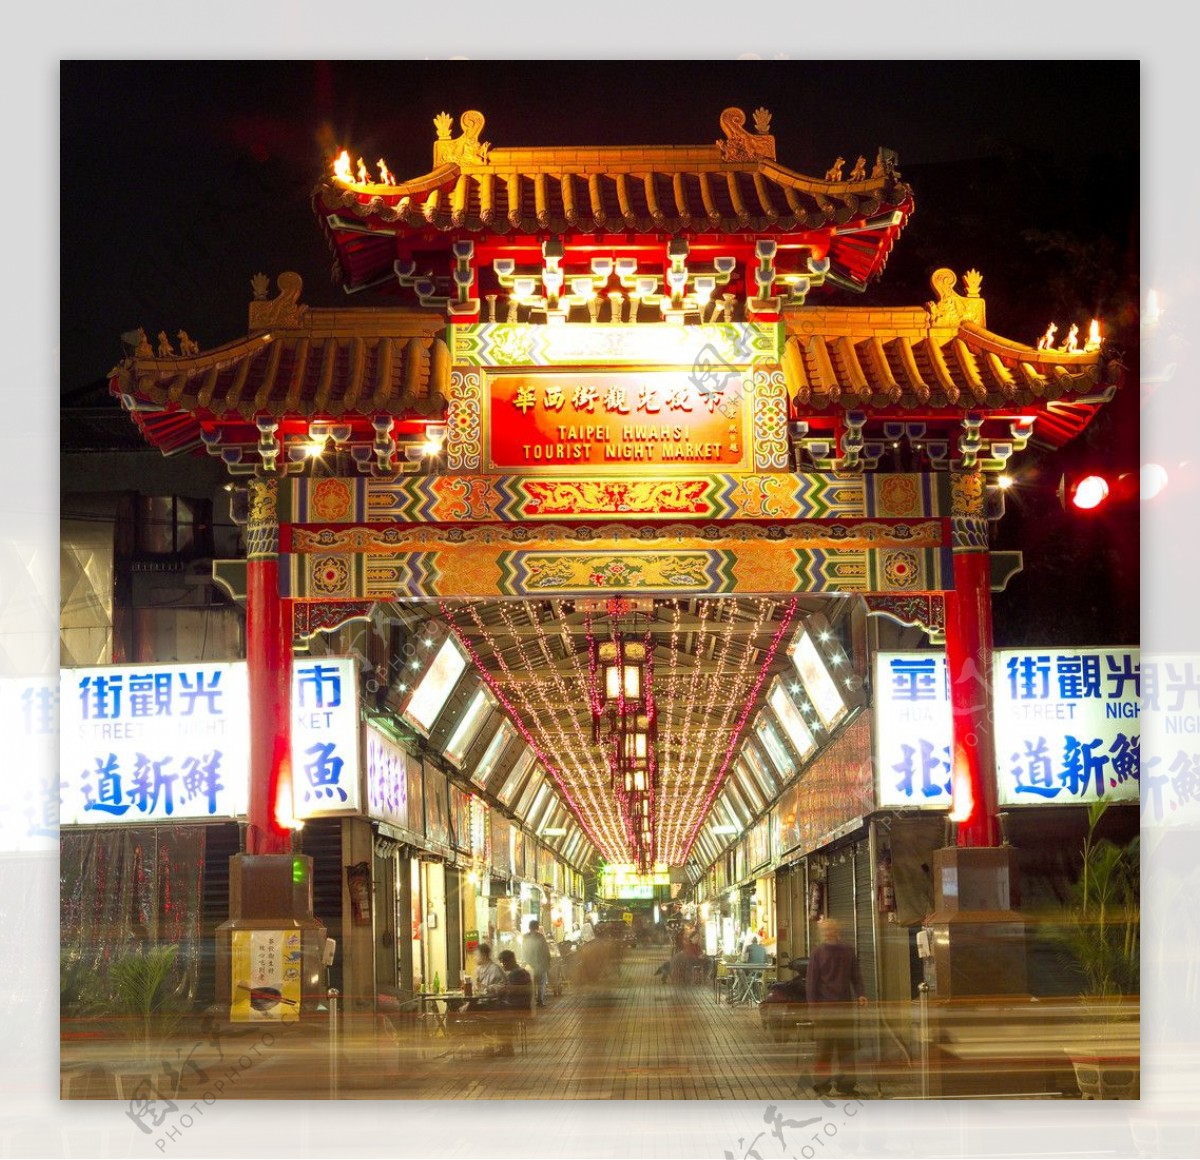 台湾风景街头夜市夜景图片